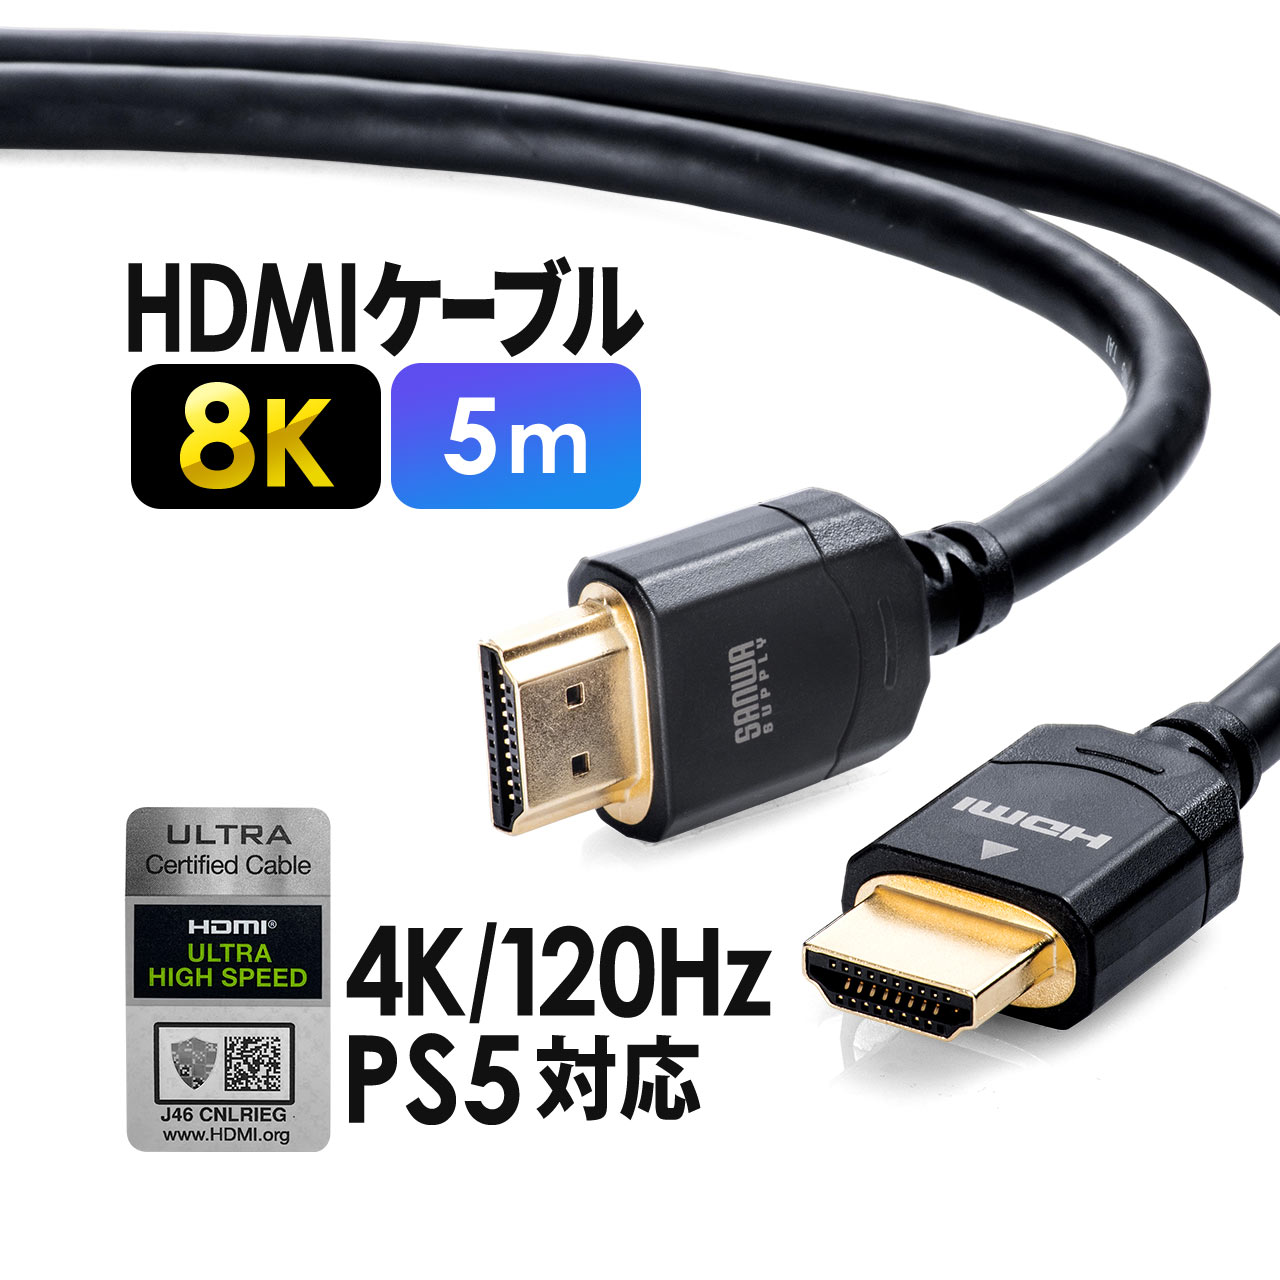 高速HDMIケーブル、4K HDMIケーブル、4.5M HDMI 2.0ケーブル